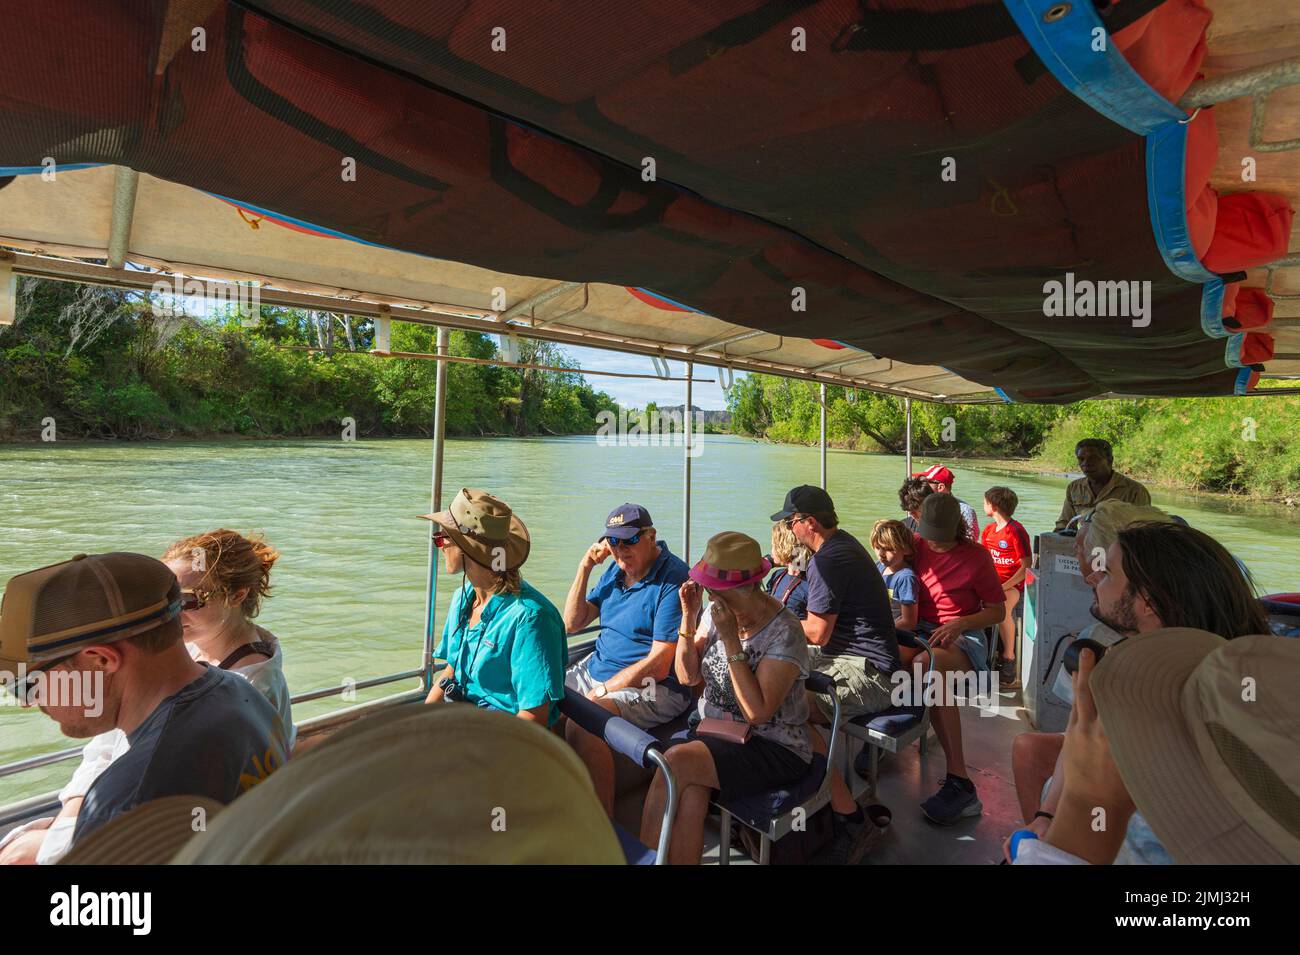 Touristes naviguant sur la rivière Alligator est avec la croisière culturelle Guluyambi, parc national de Kakadu, territoire du Nord, Australie Banque D'Images